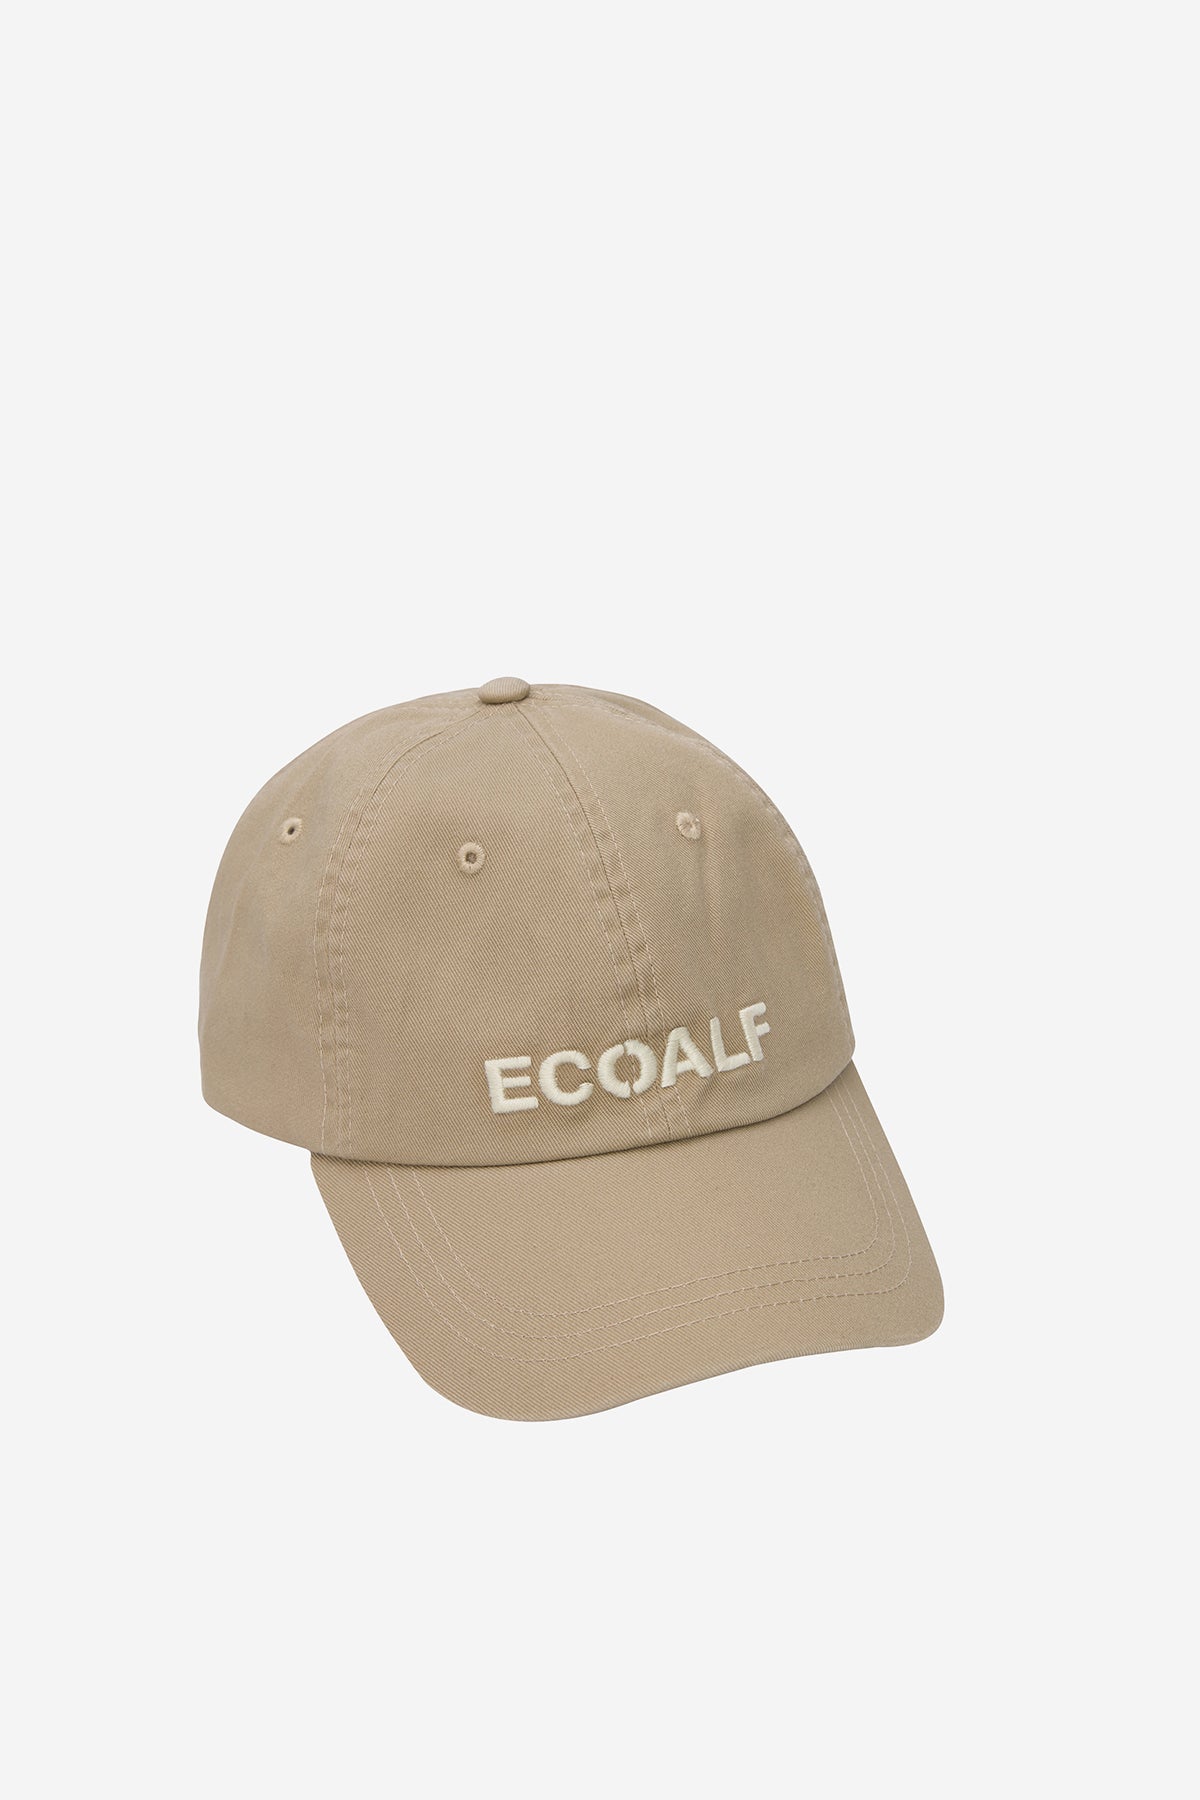 ECOALF CAP BEIGE